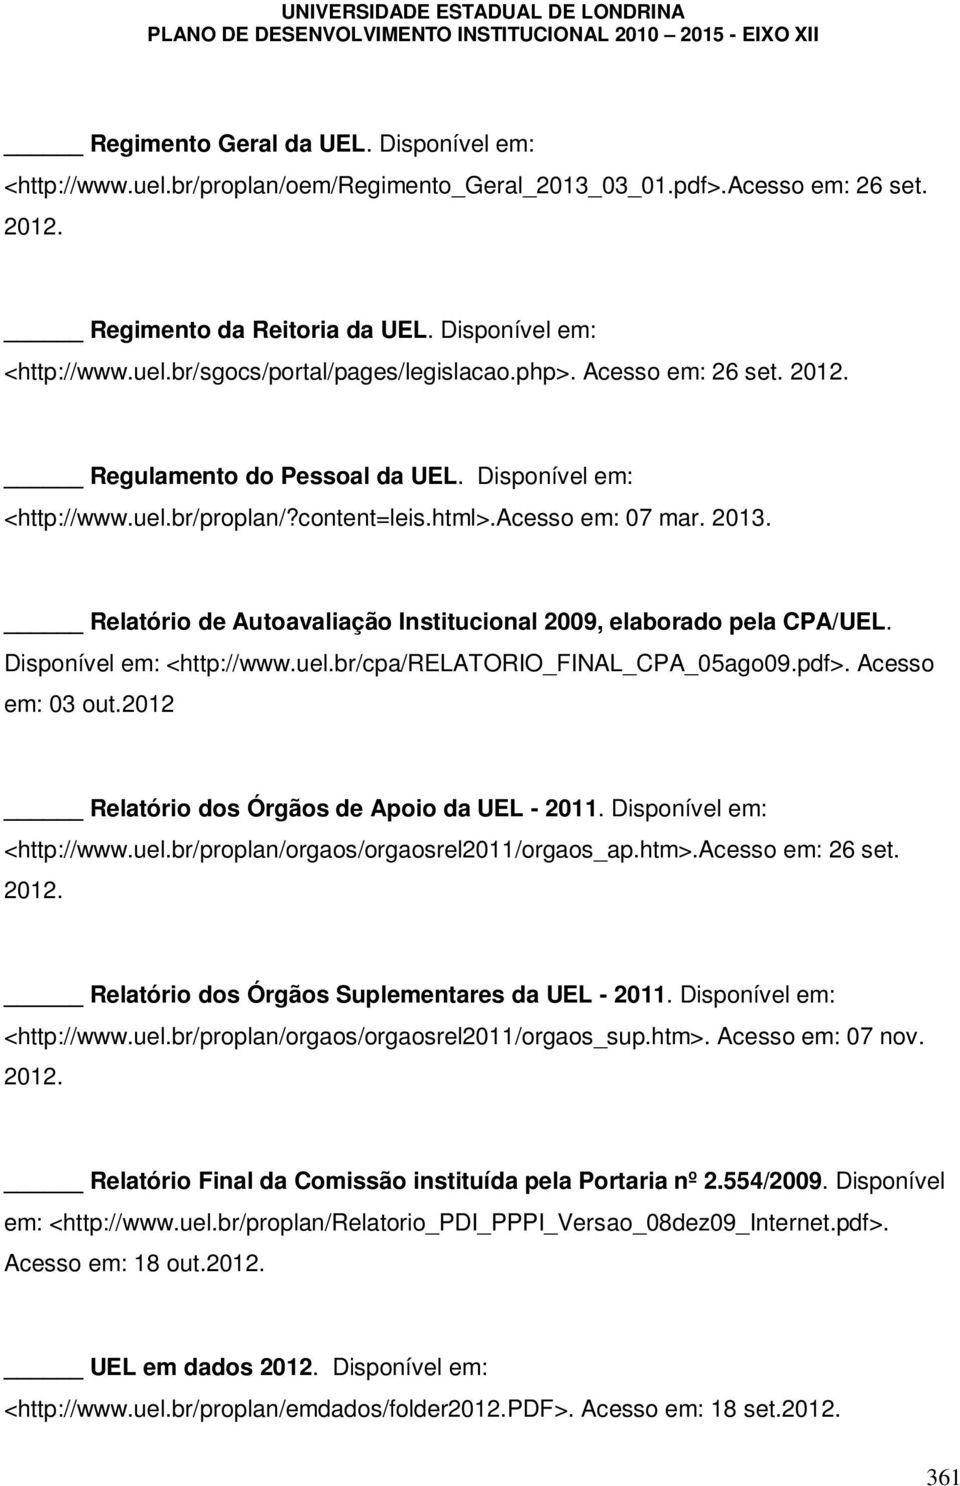 content=leis.html>.acesso em: 07 mar. 2013. Relatório de Autoavaliação Institucional 2009, elaborado pela CPA/UEL. Disponível em: <http://www.uel.br/cpa/relatorio_final_cpa_05ago09.pdf>.